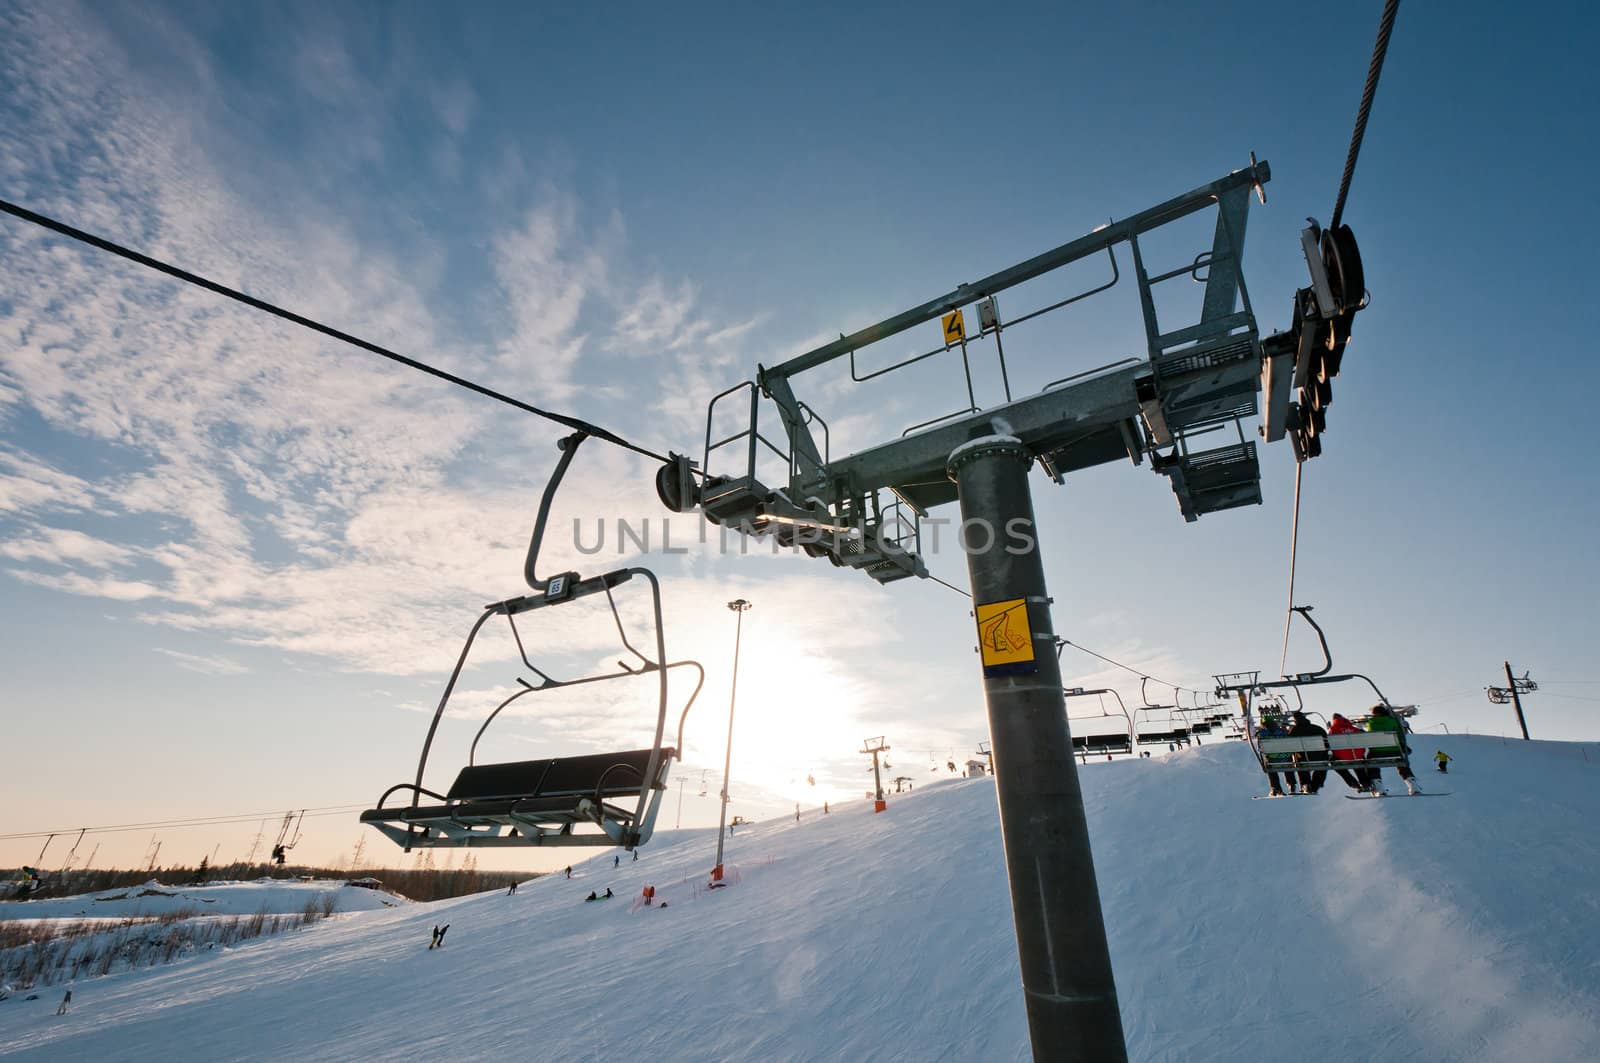 Ski-lift support on ski resort by dmitryelagin